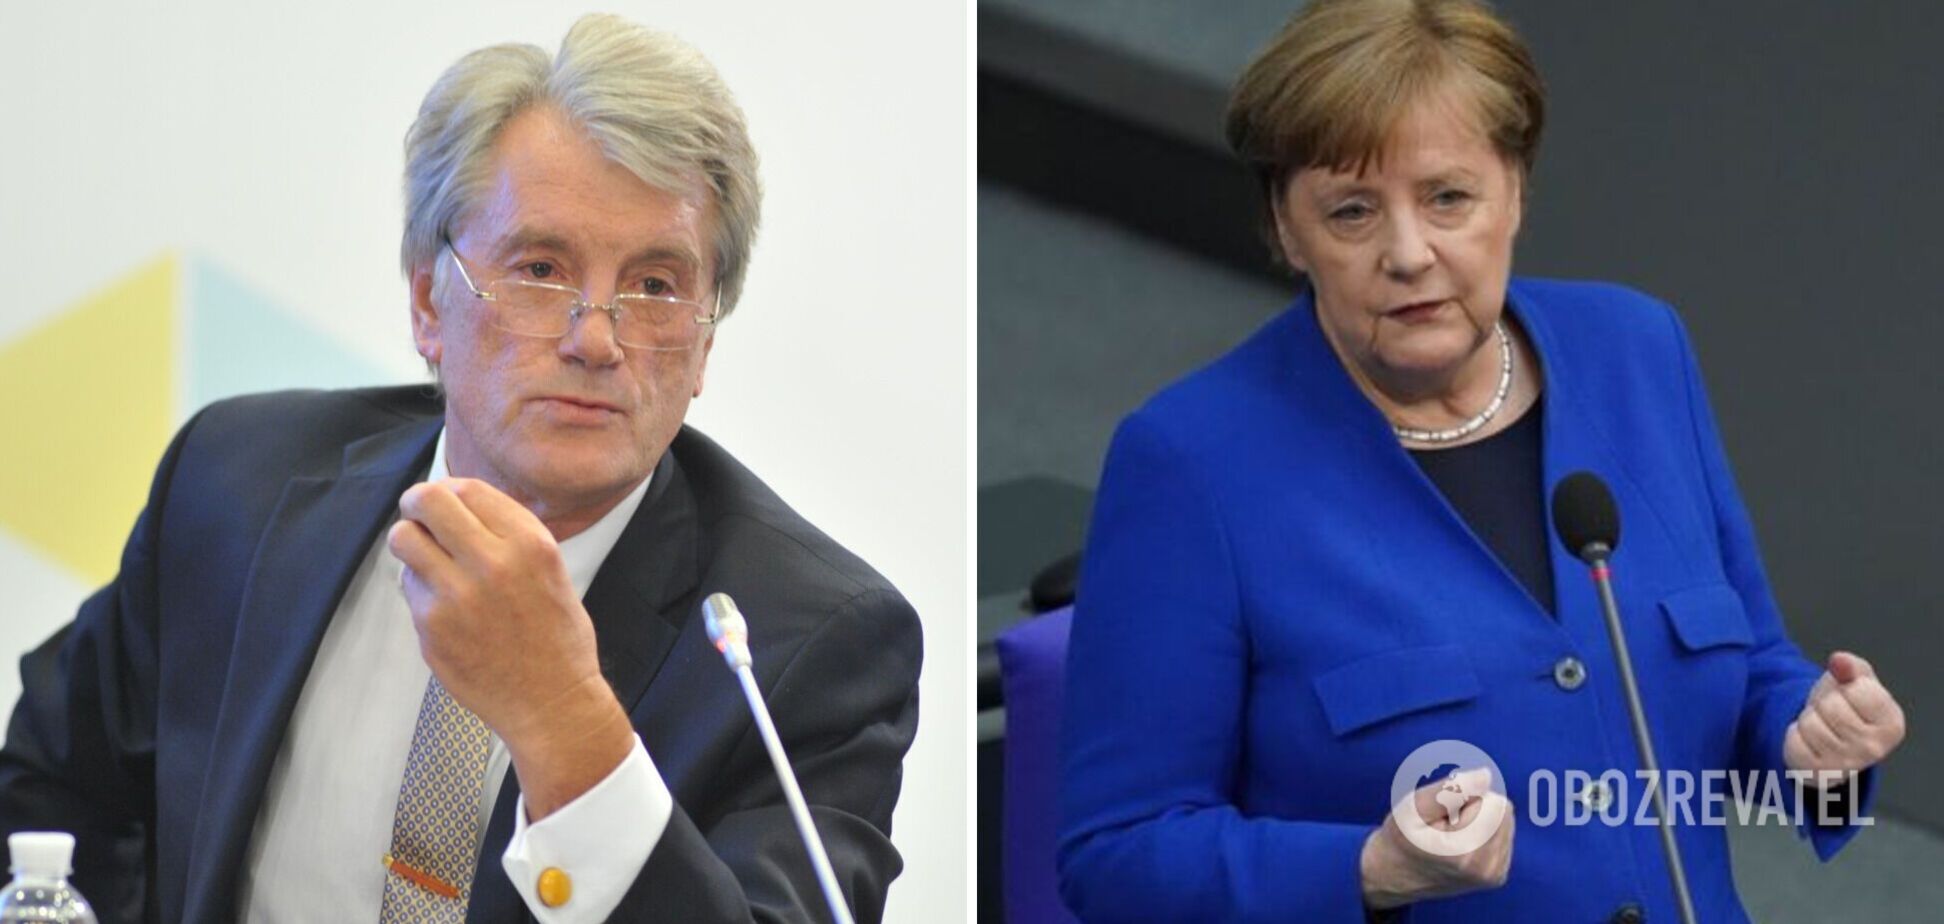 'Не хотела говорить о ПДЧ': стало известно о странной реакции Меркель на слова Ющенко на саммите НАТО в 2008 году